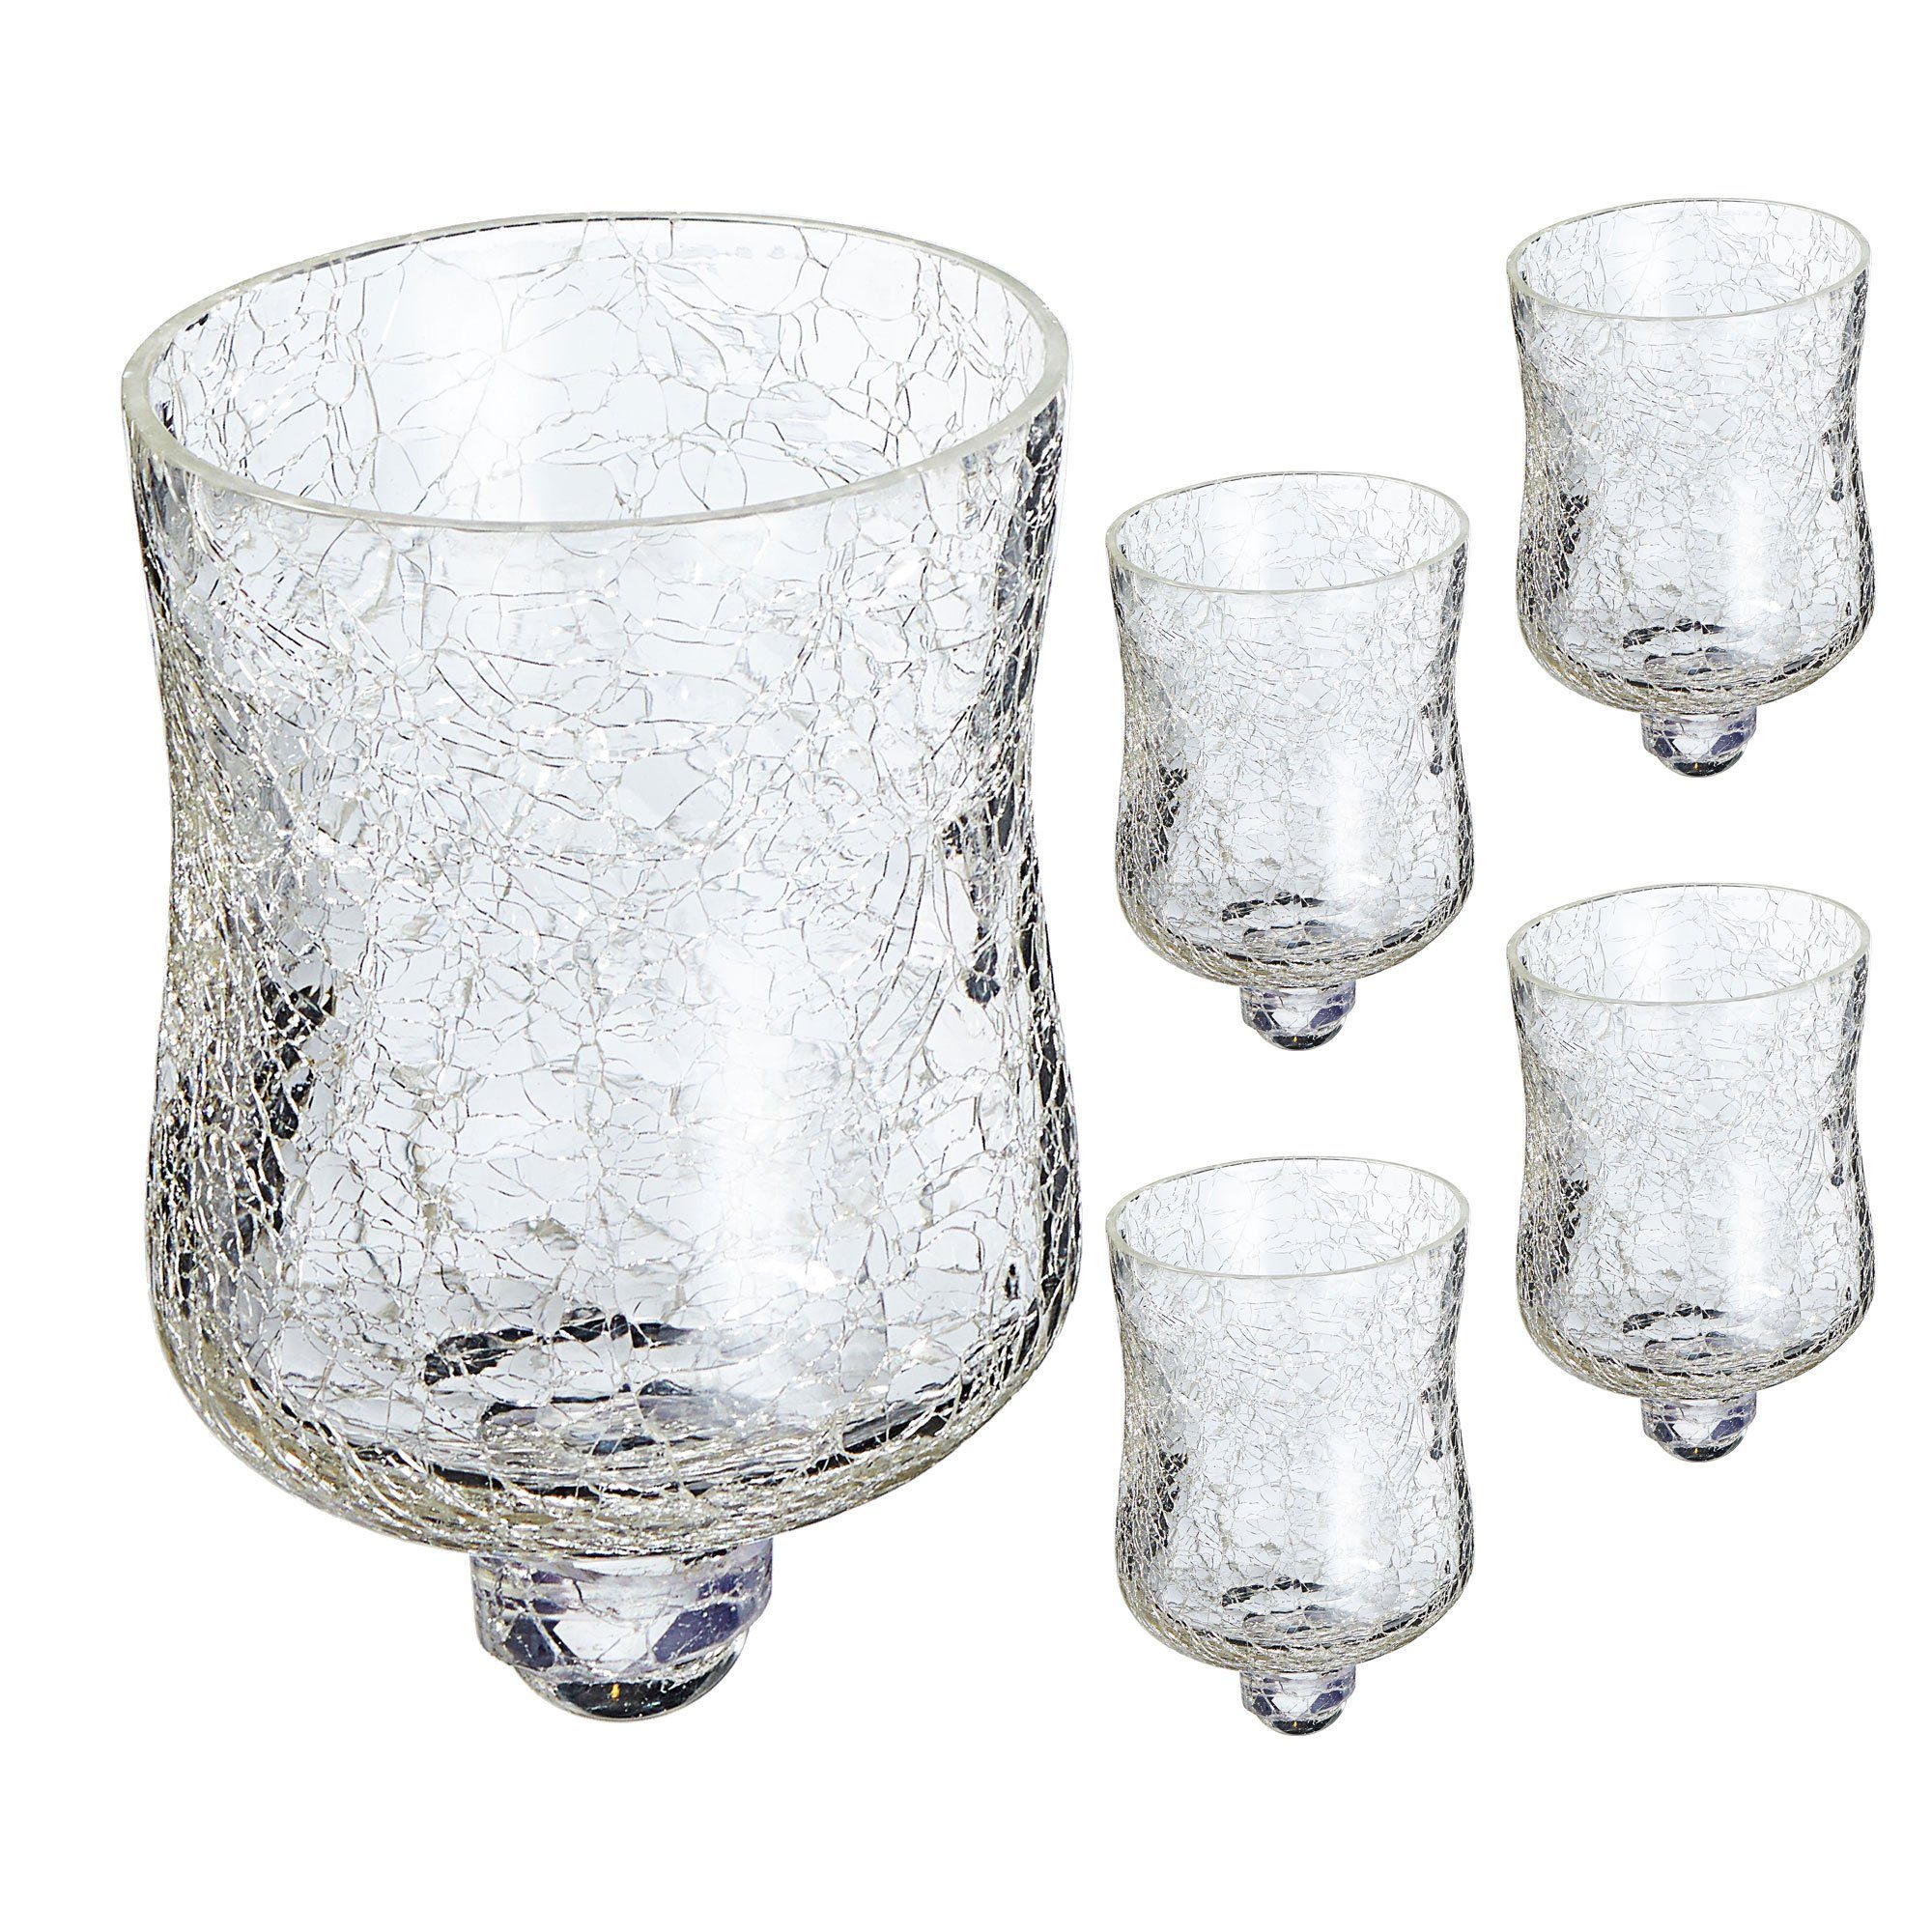 CEPEWA Teelichthalter Design Crackle 5x für Glasaufsatz Kerzenleuchter